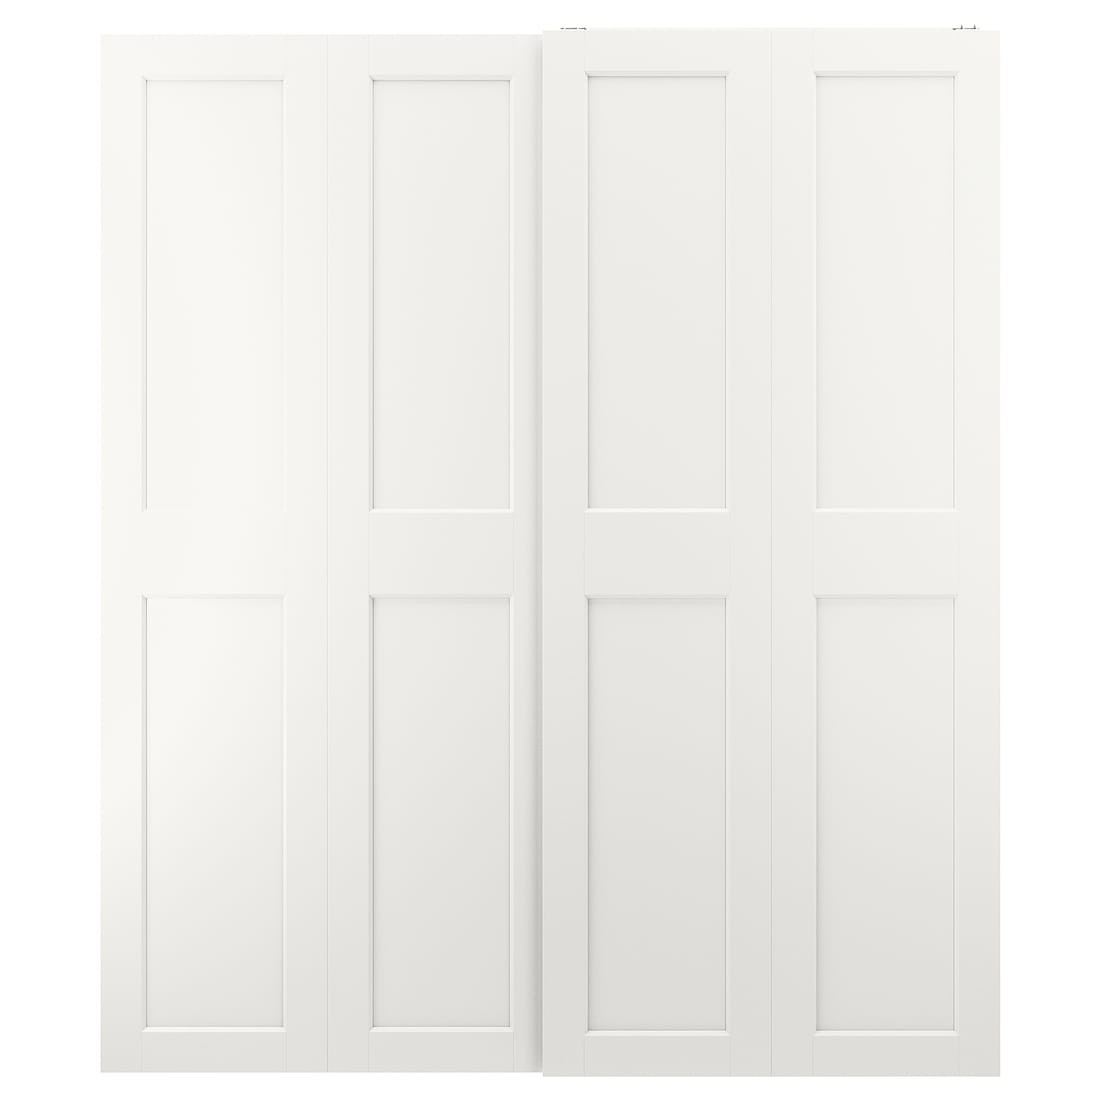 GRIMO ГРИМО Пара раздвижных дверей, белый, 200x236 см